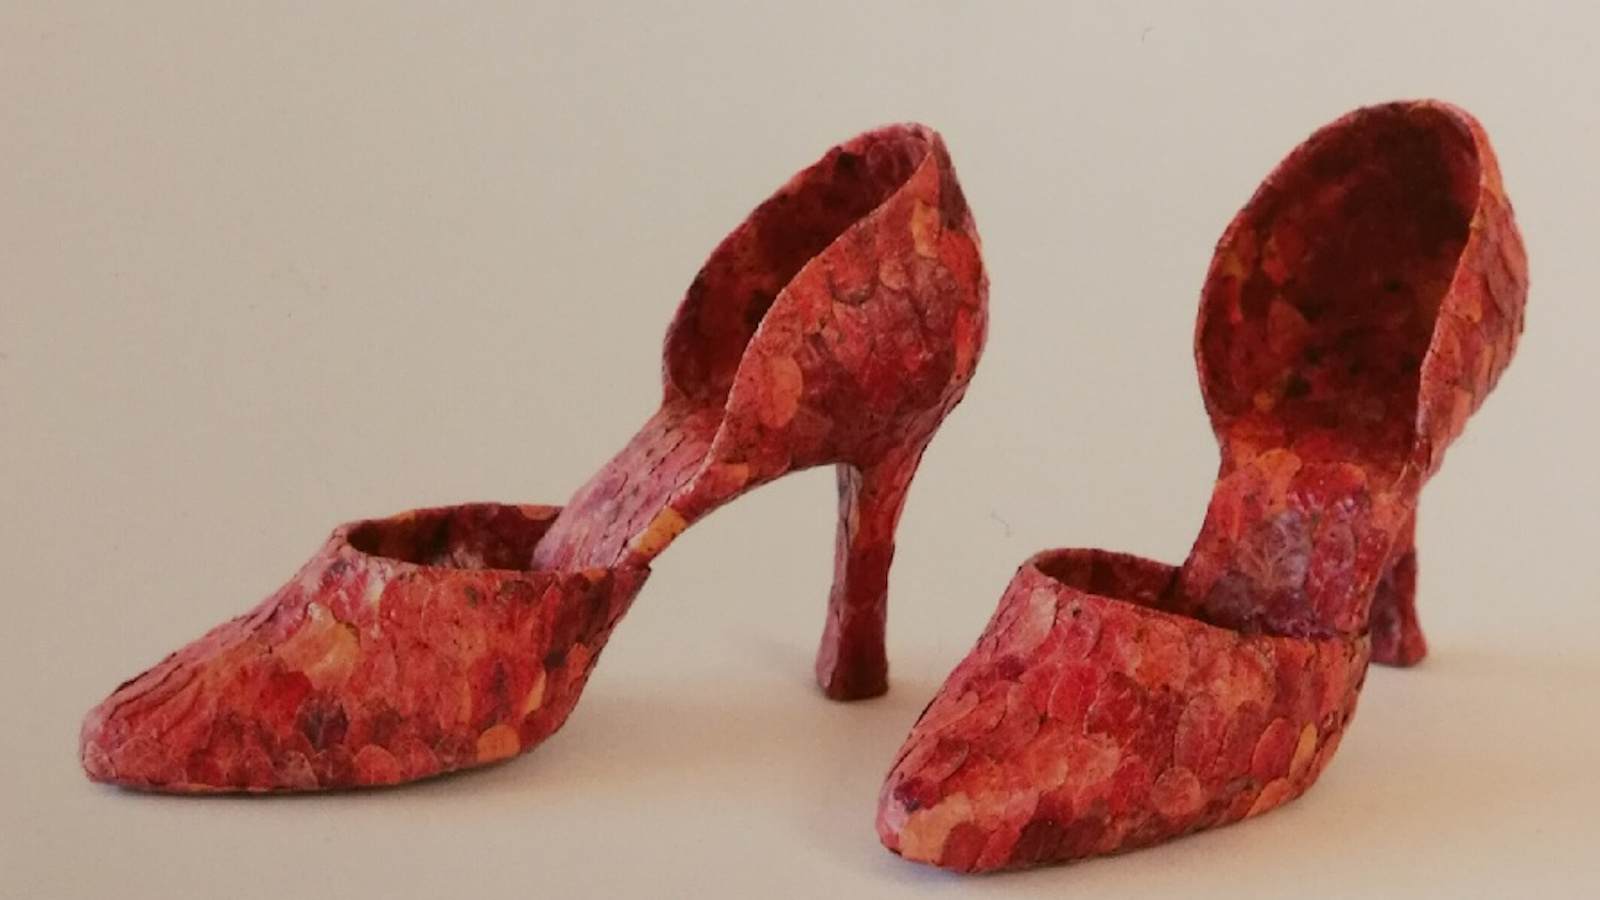 Kuvassa on punaiset kengät, jotka on tehty puolukanlehdistä. Kengissä on korot ja kapeat kärjet.